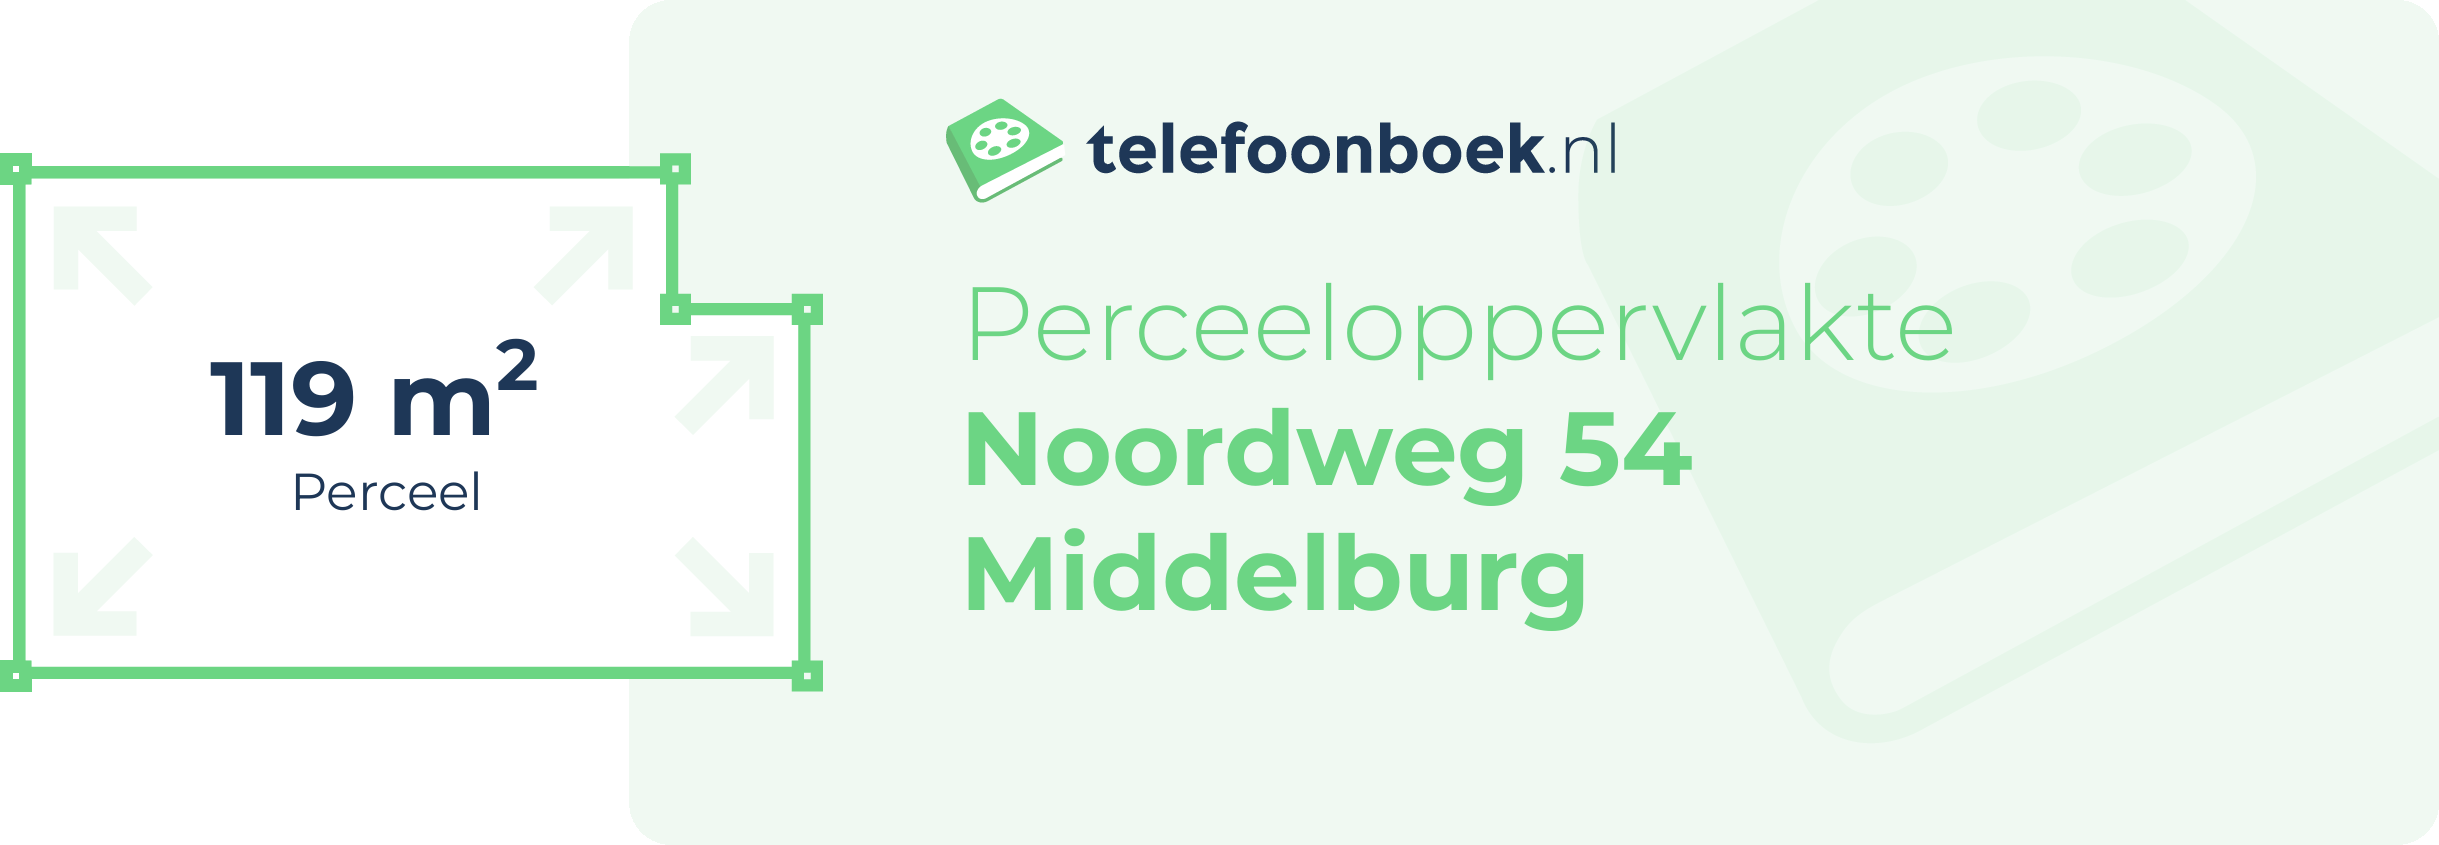 Perceeloppervlakte Noordweg 54 Middelburg